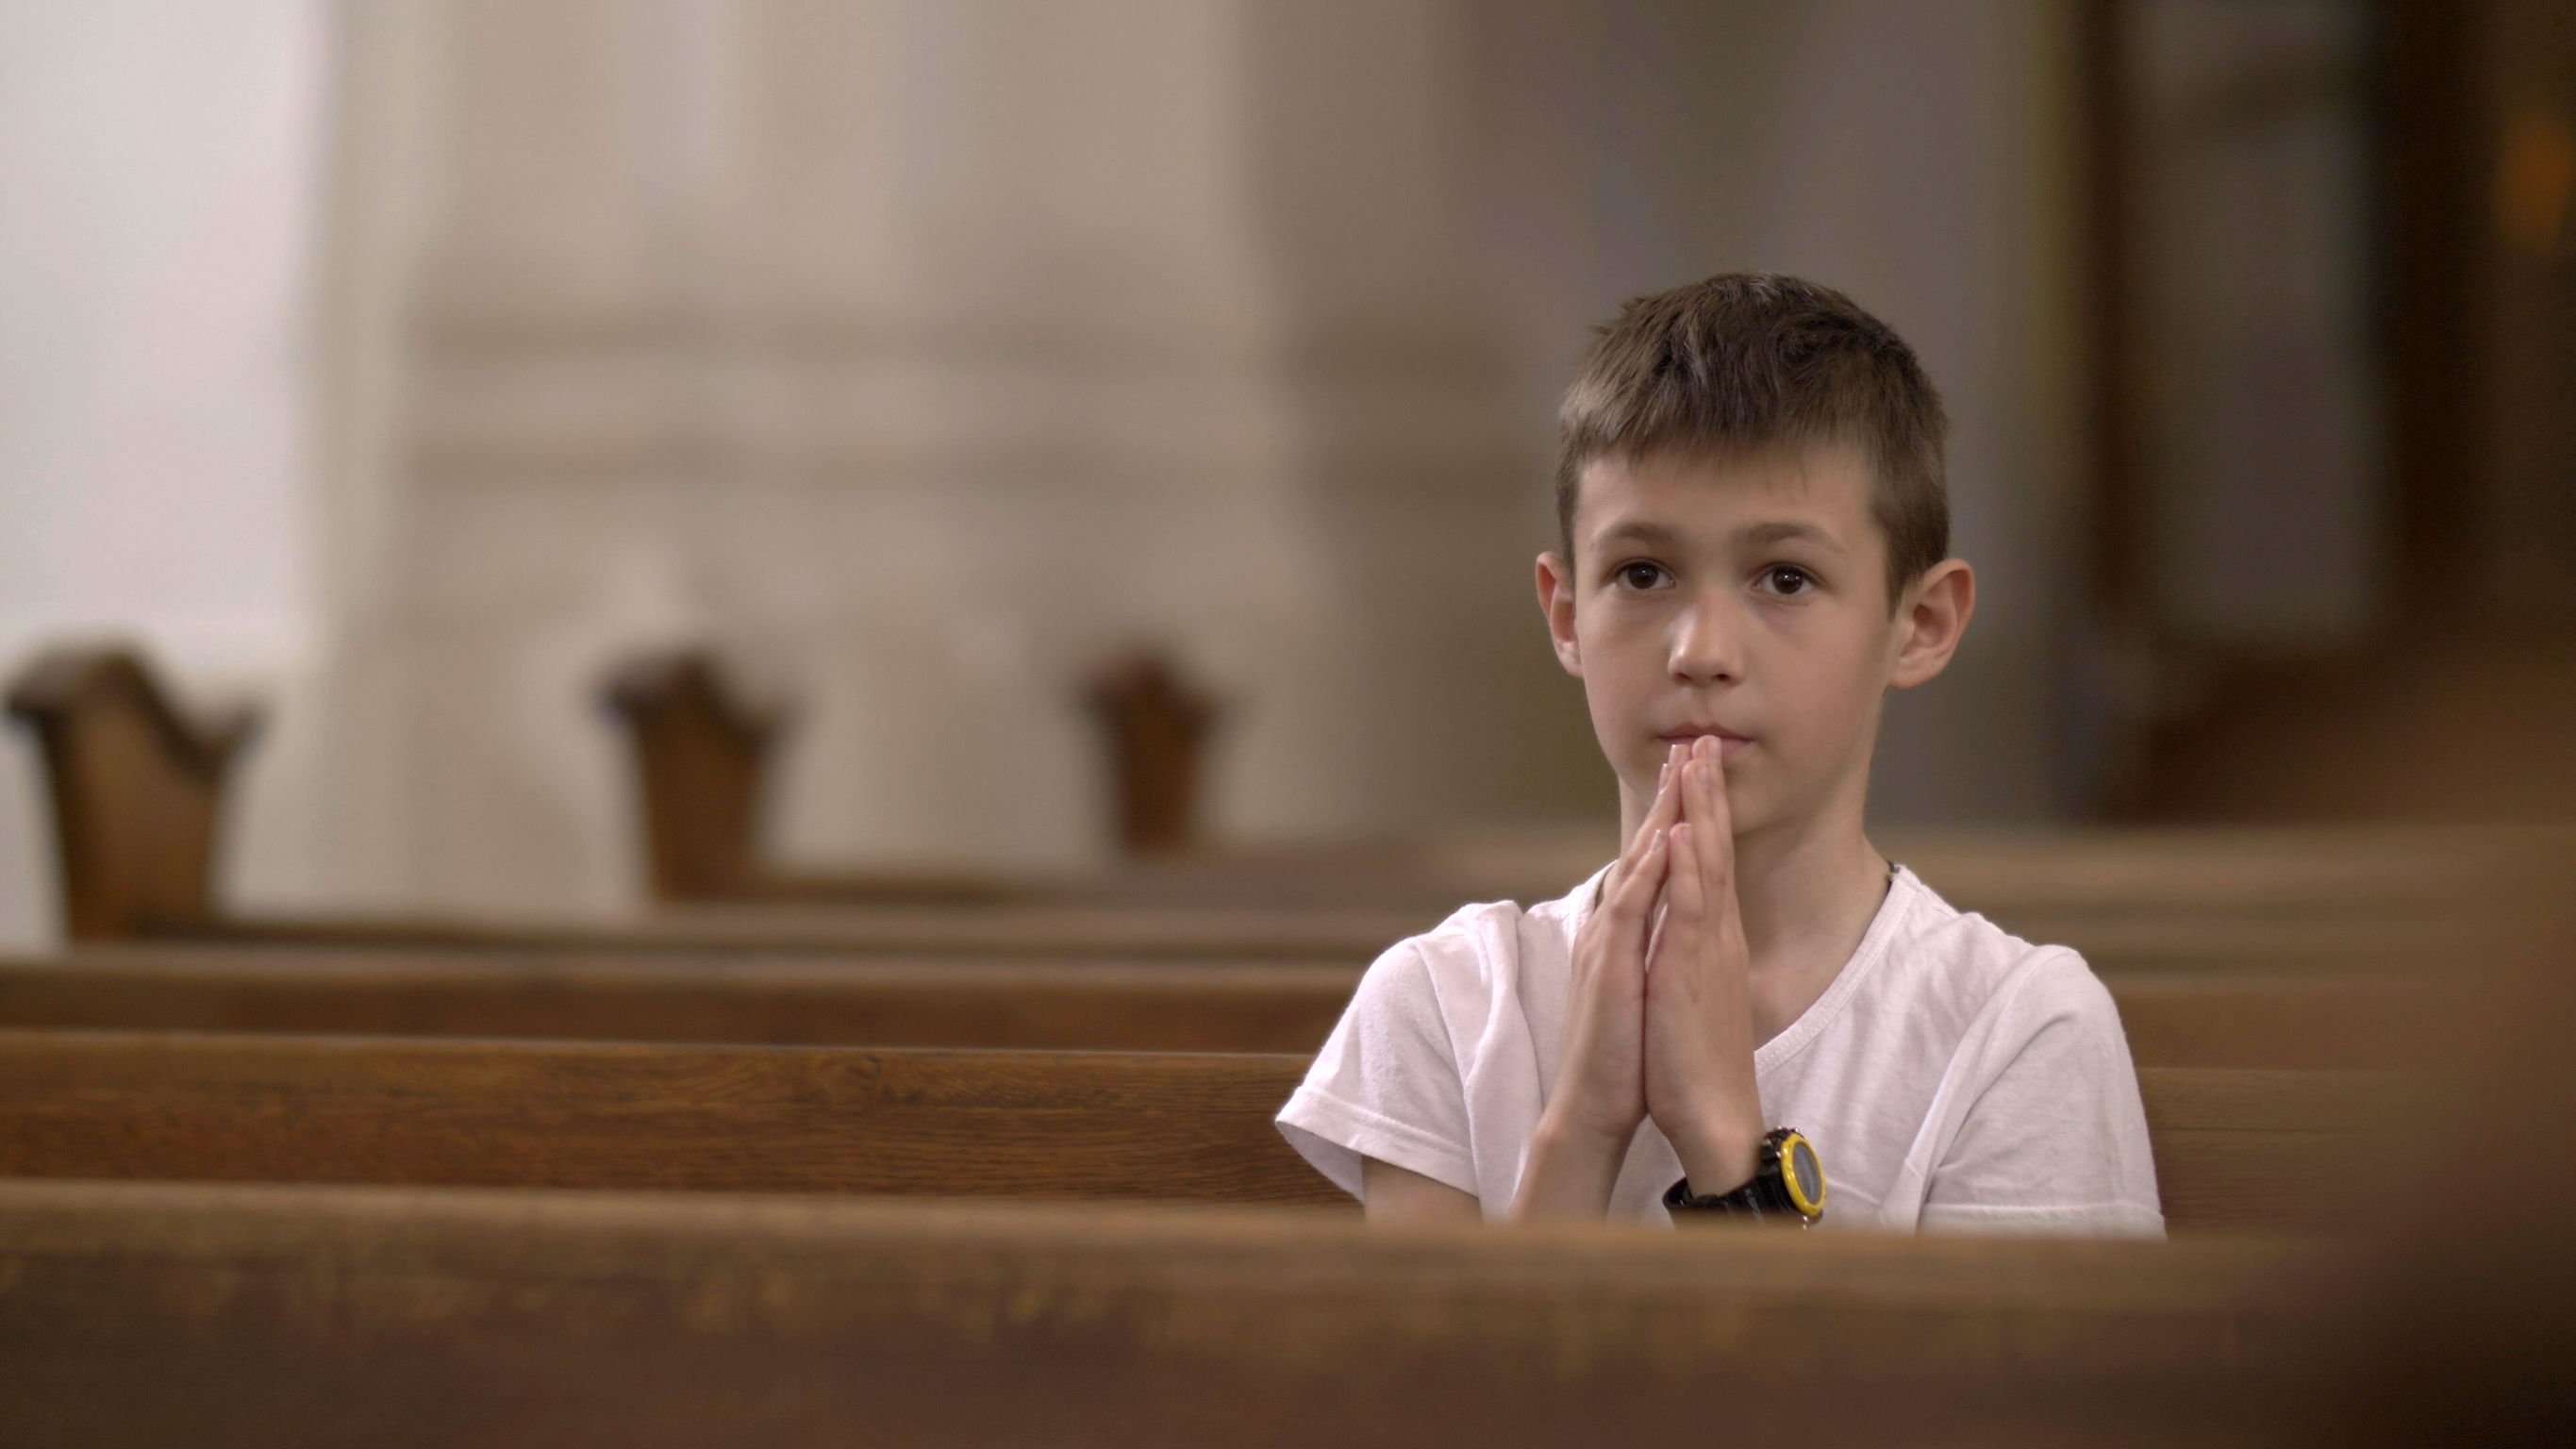 Menino sentado em banco de igreja sozinho, com as palmas das mãos unidas na frente de seu rosto.